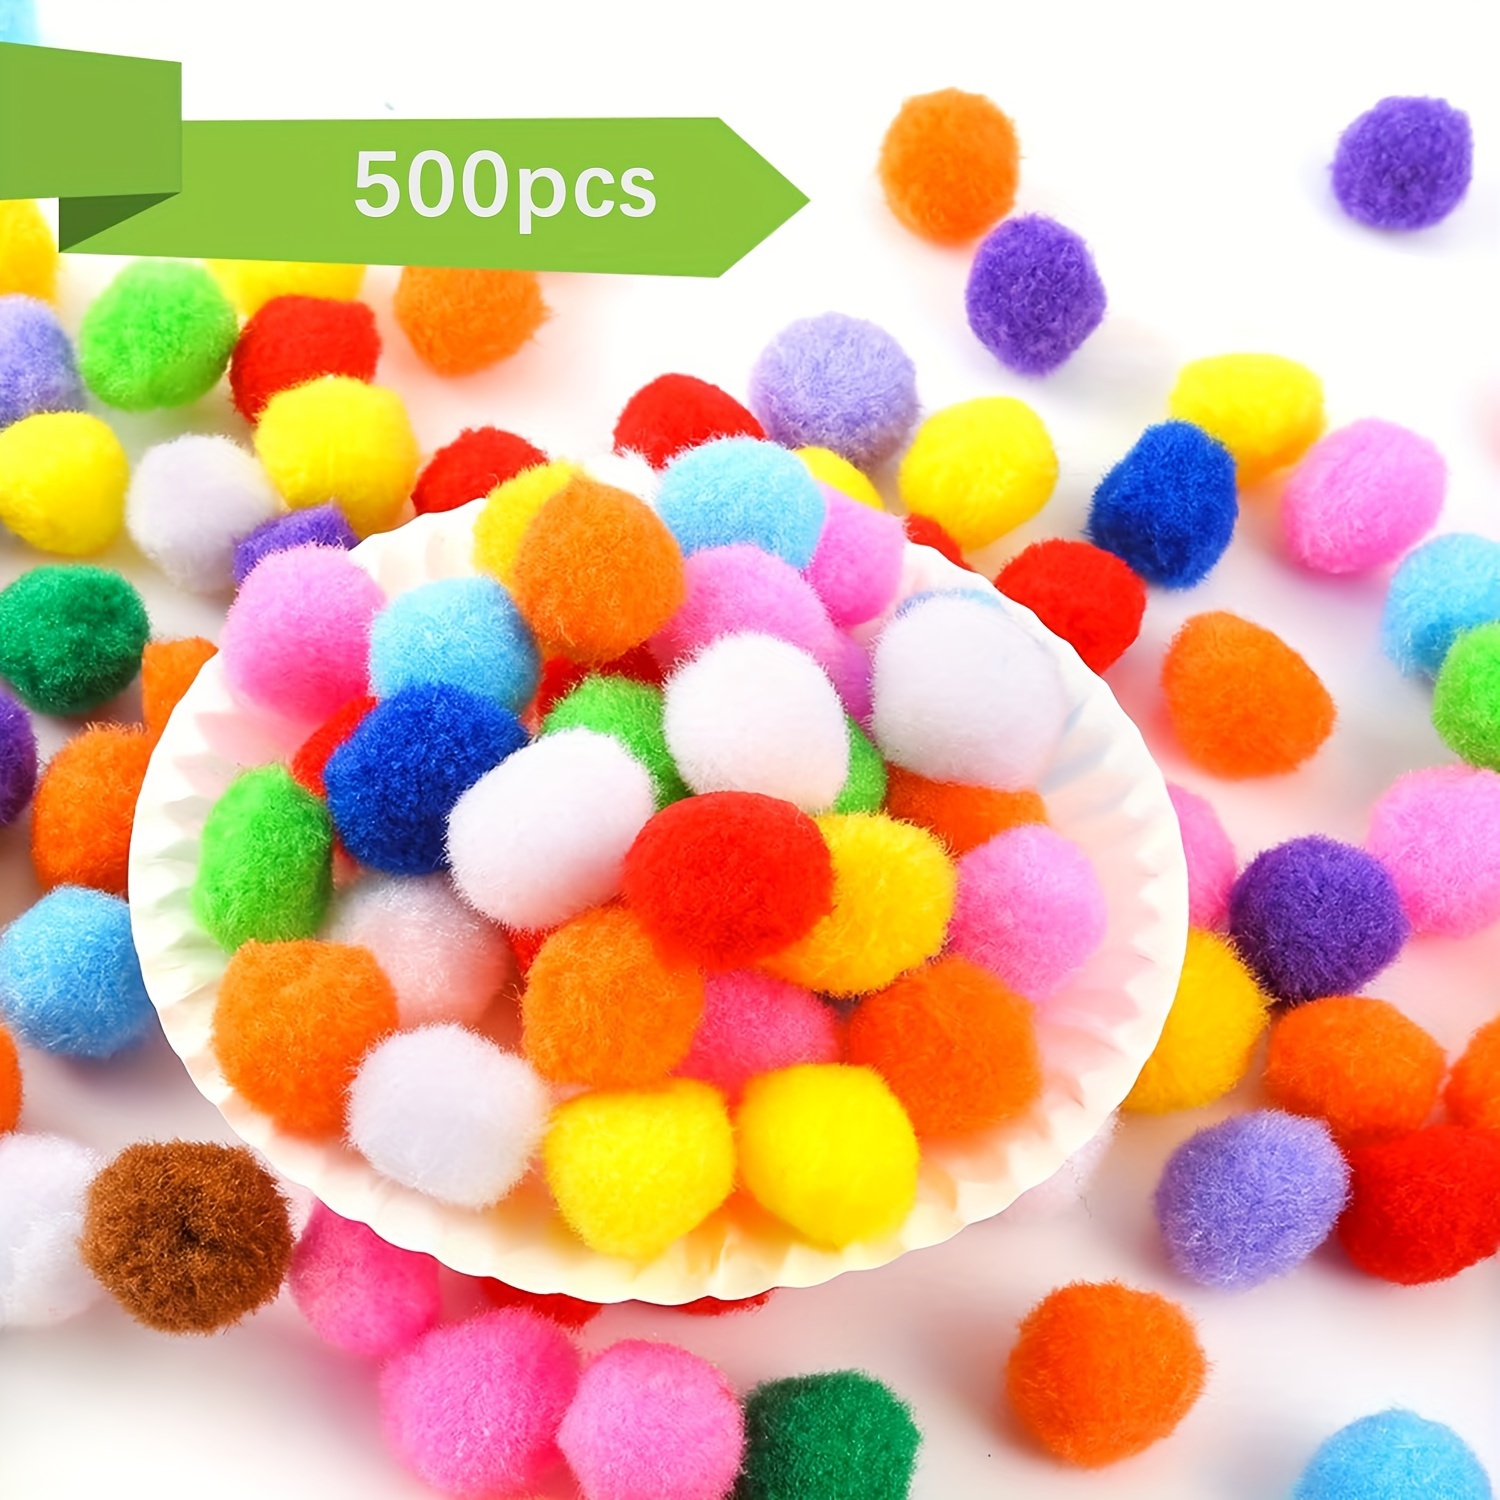 900 PCS Pom Poms Multicolor Bulk Pom Poms Arts and Crafts Soft and